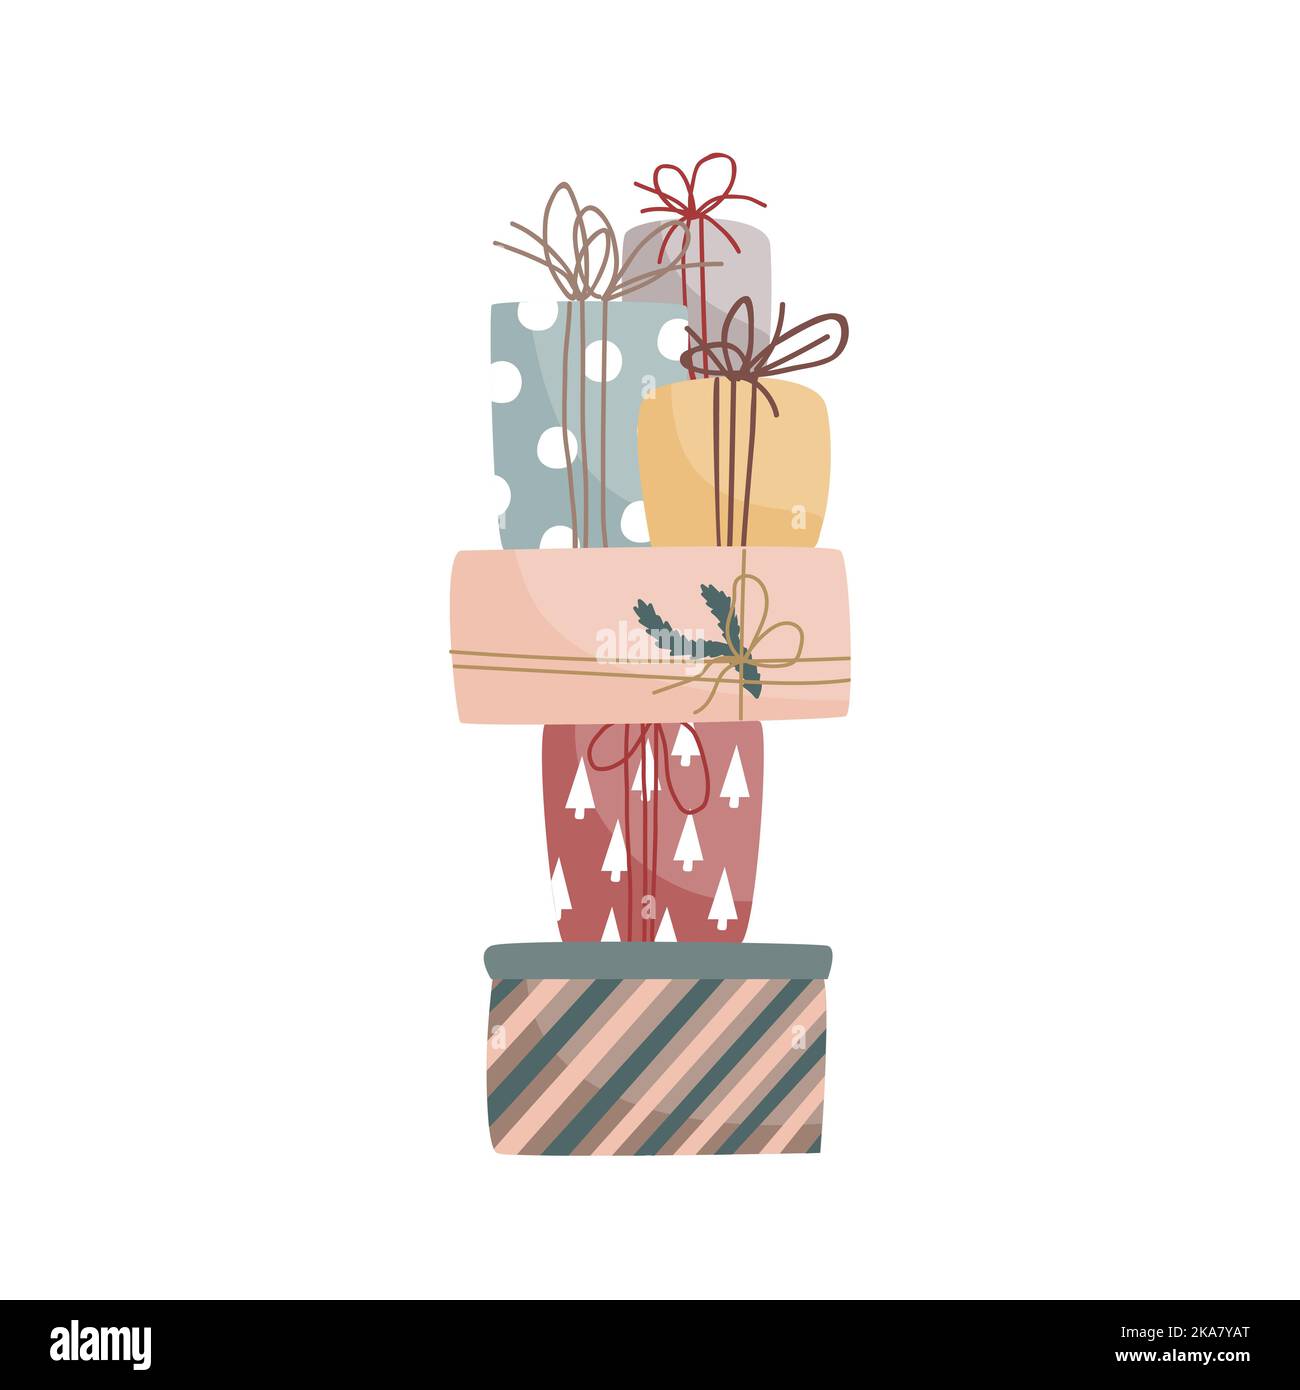 Hoher Stapel von Weihnachtsgeschenken in Pastellfarben. Modernes Plakat, Broschüre, Wandkunst-Design für die Wintersaison. Weihnachtskarte. Vektorgrafik Stock Vektor